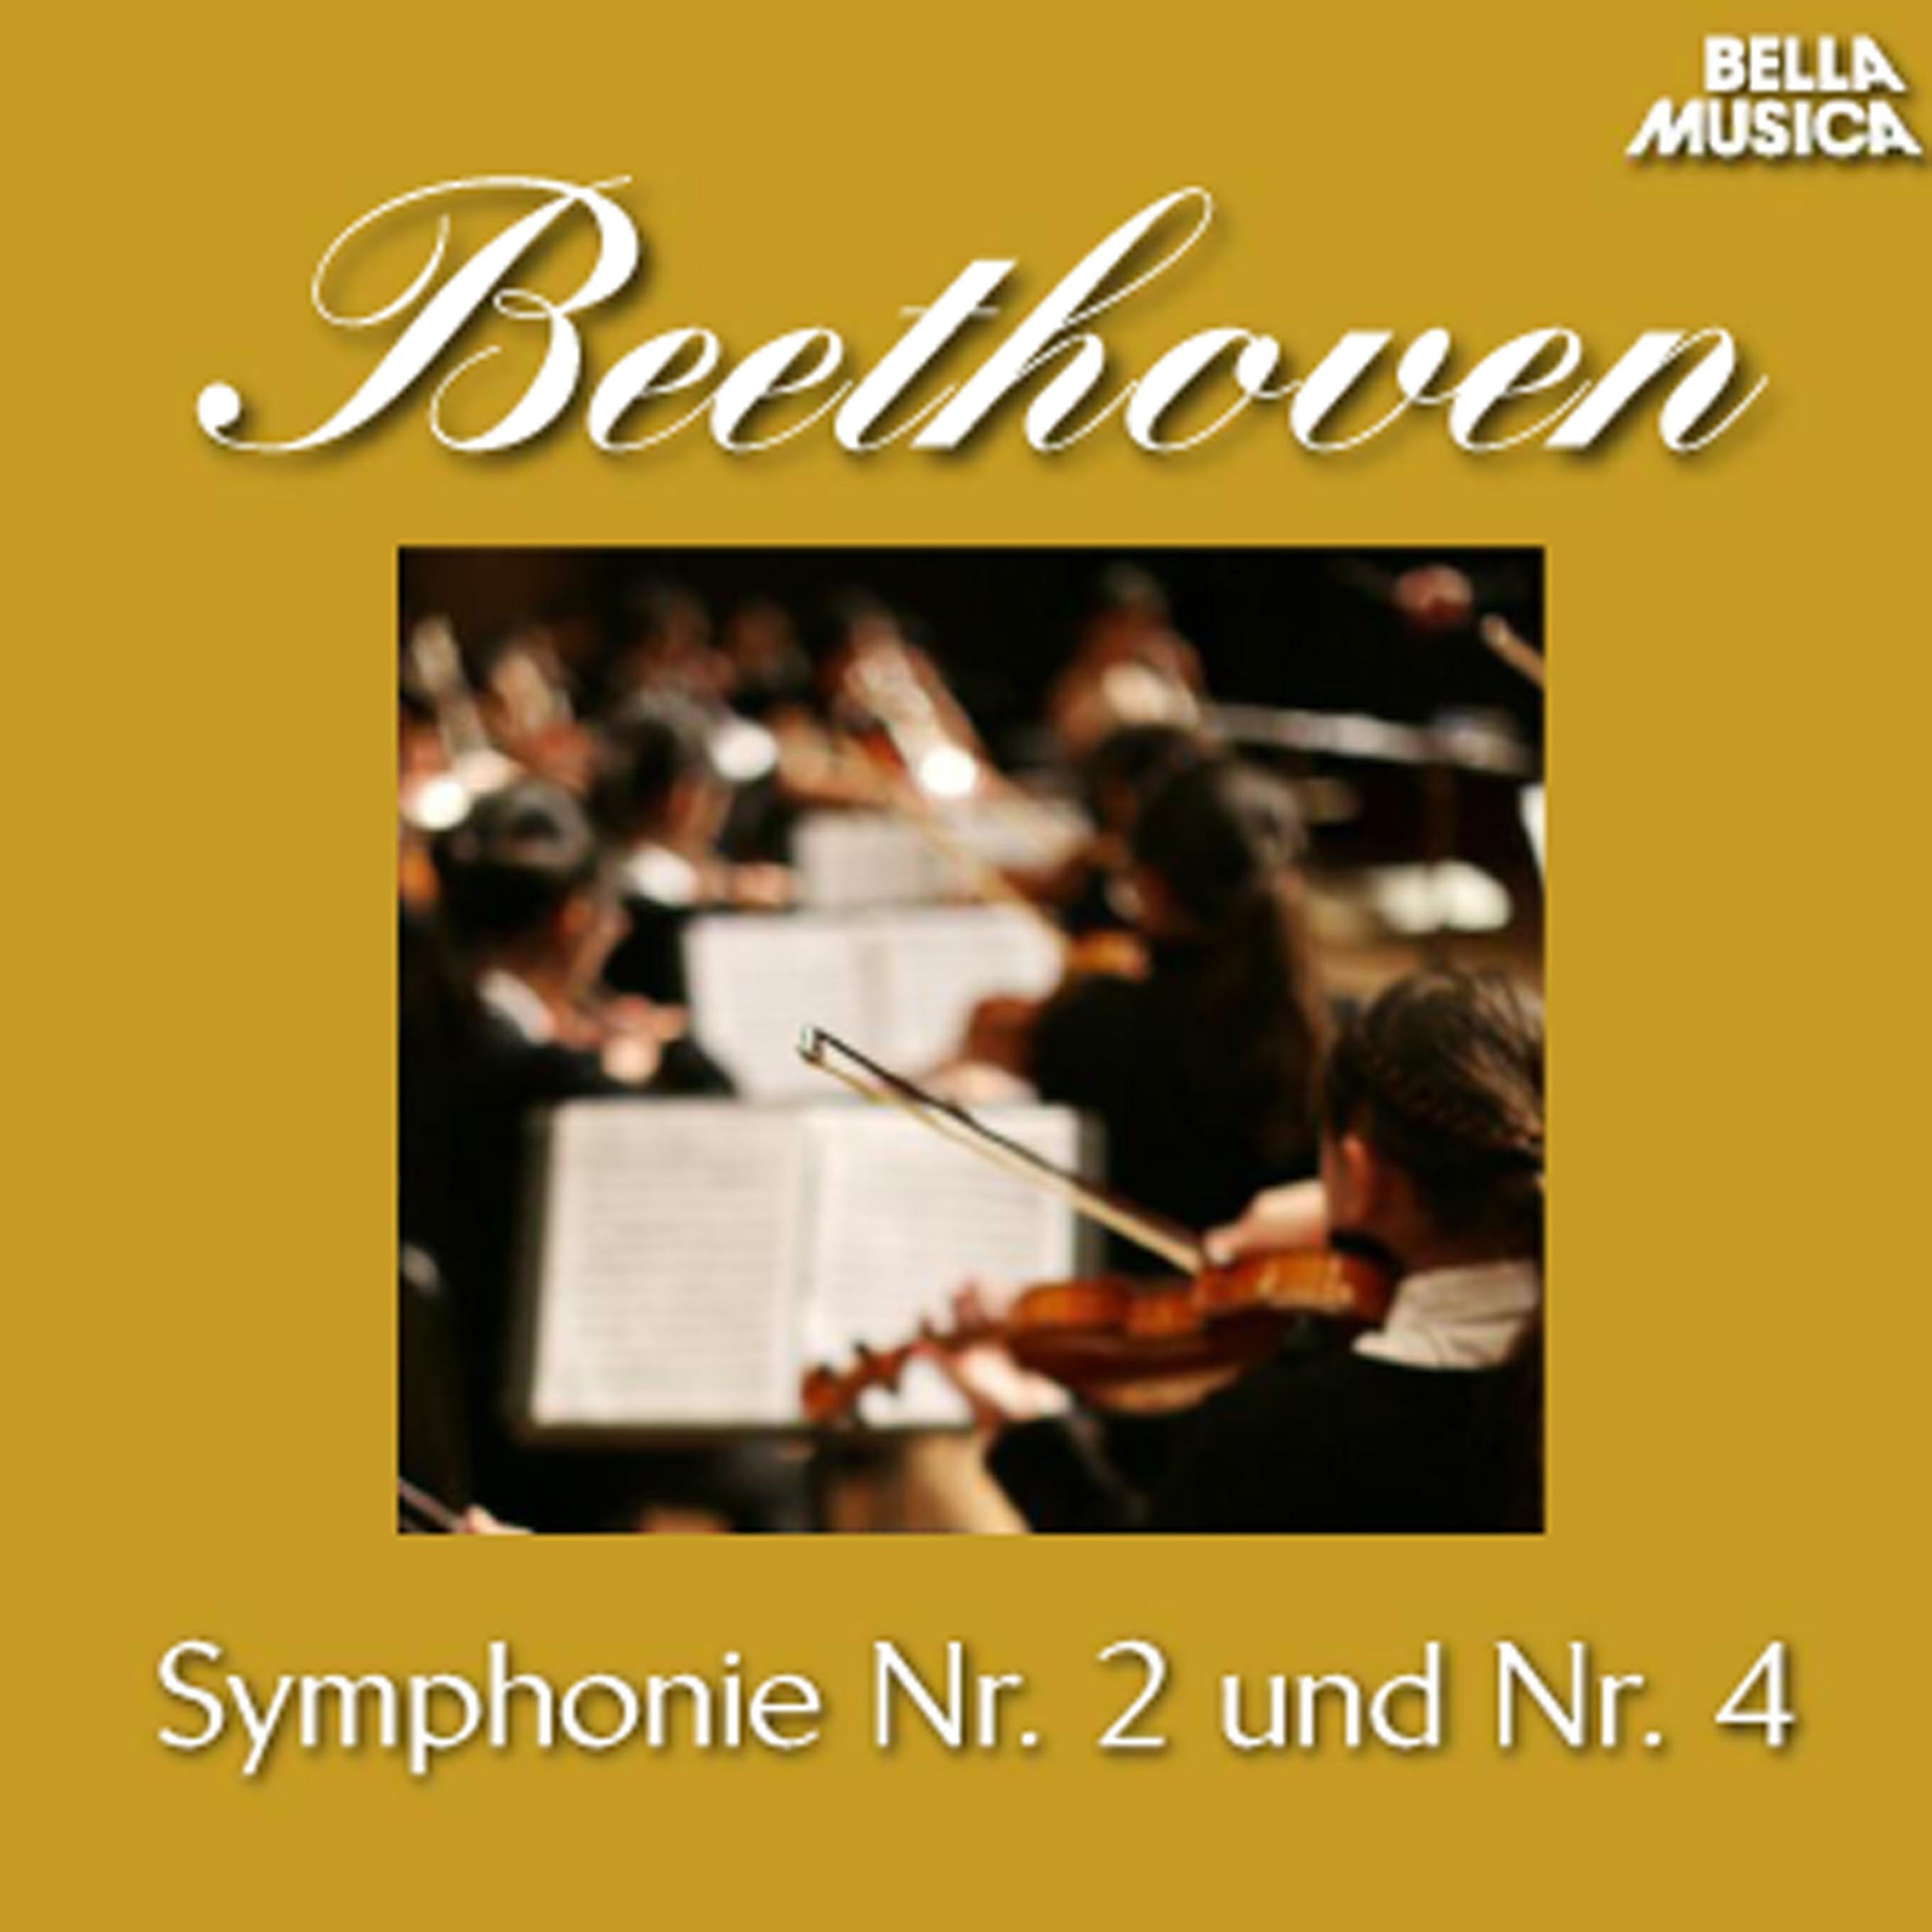 Sinfonie No. 2 fü r Orchester in D Major, Op. 36: III. Scherzo  Allegro